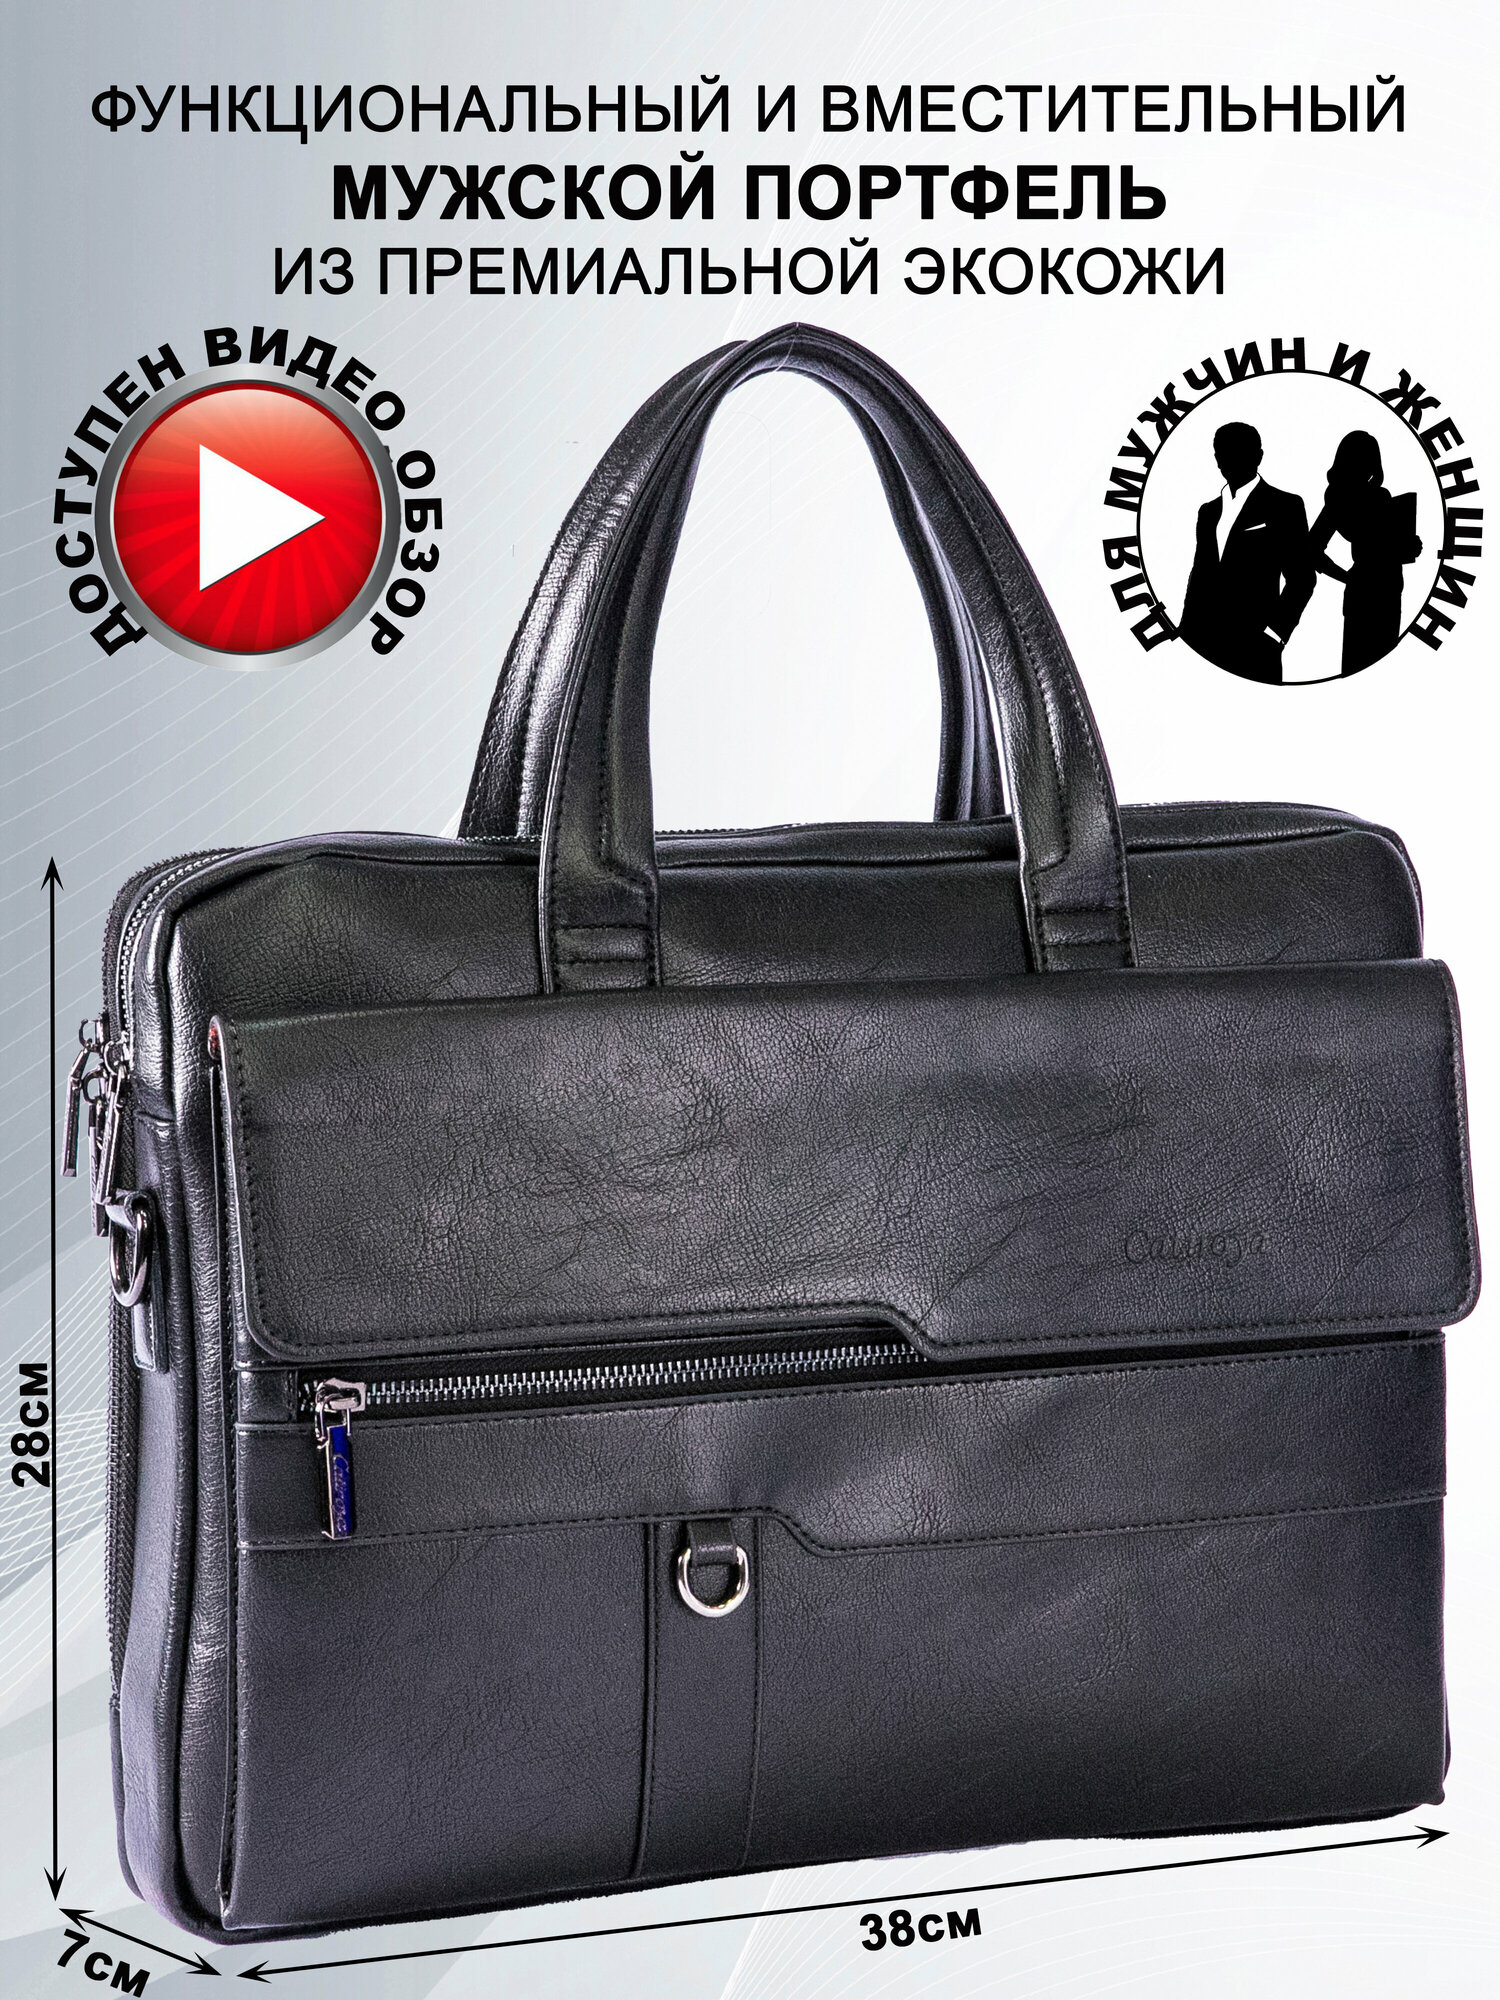 Портфель CATIROYA / черный кожаный портфель / формат а4 мужской / сумка мужская через плечо а4 / сумка кожаная классика